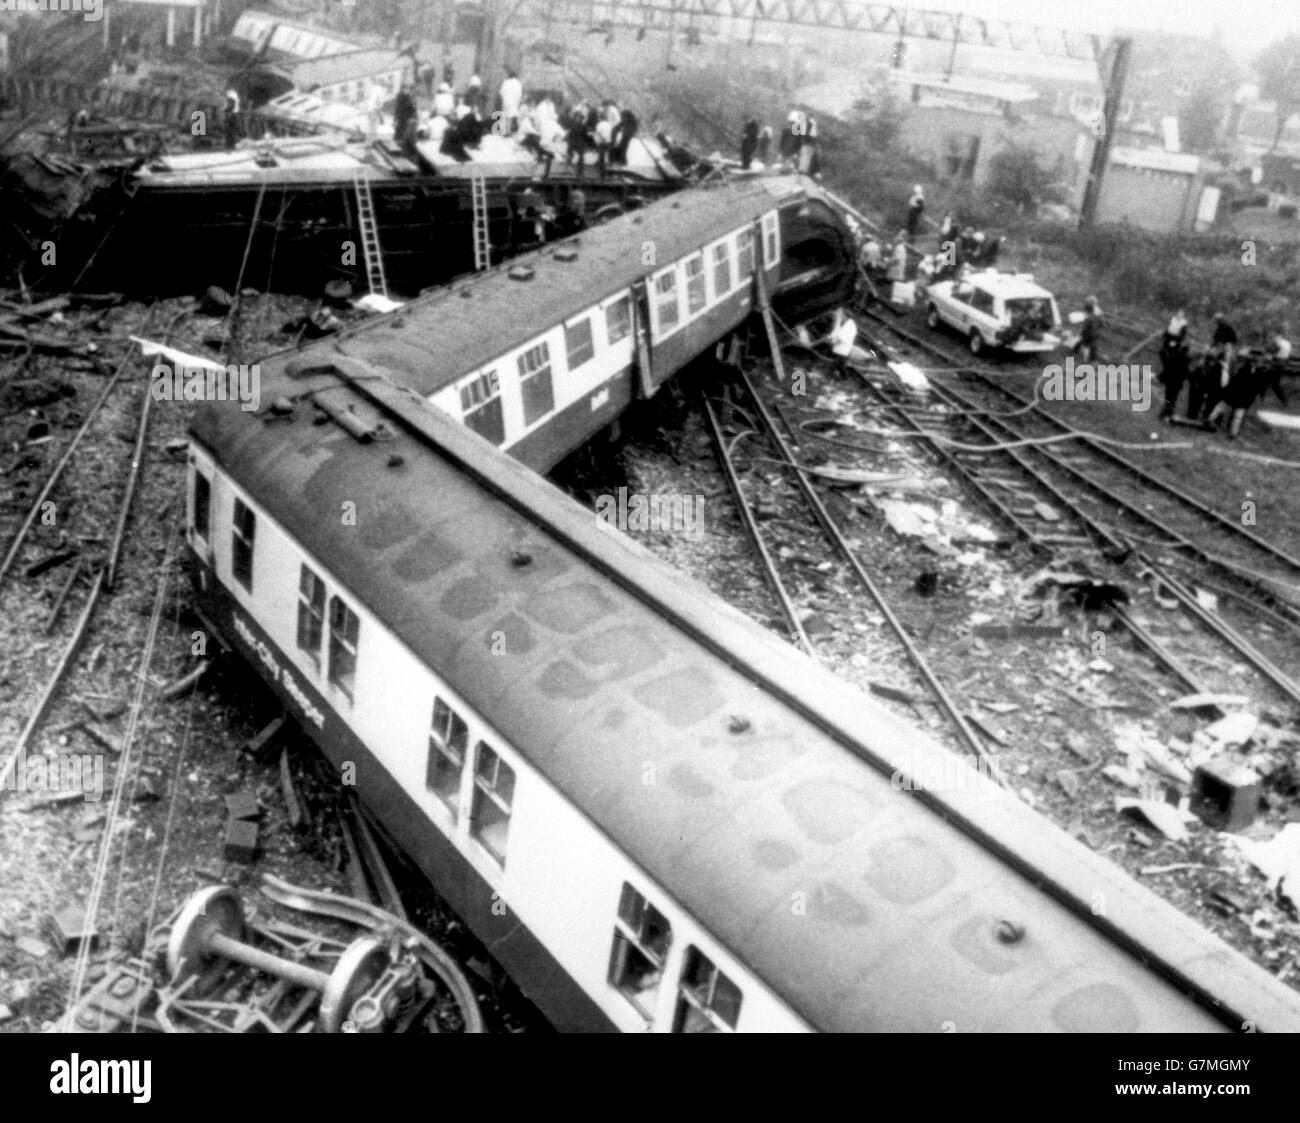 Allgemeiner Blick auf den zwischenstädtischen Schläfer von London Euston nach Glasgow, der bei der Annäherung an Nuneatons Trent Valley Station abgestürzt ist. Stockfoto